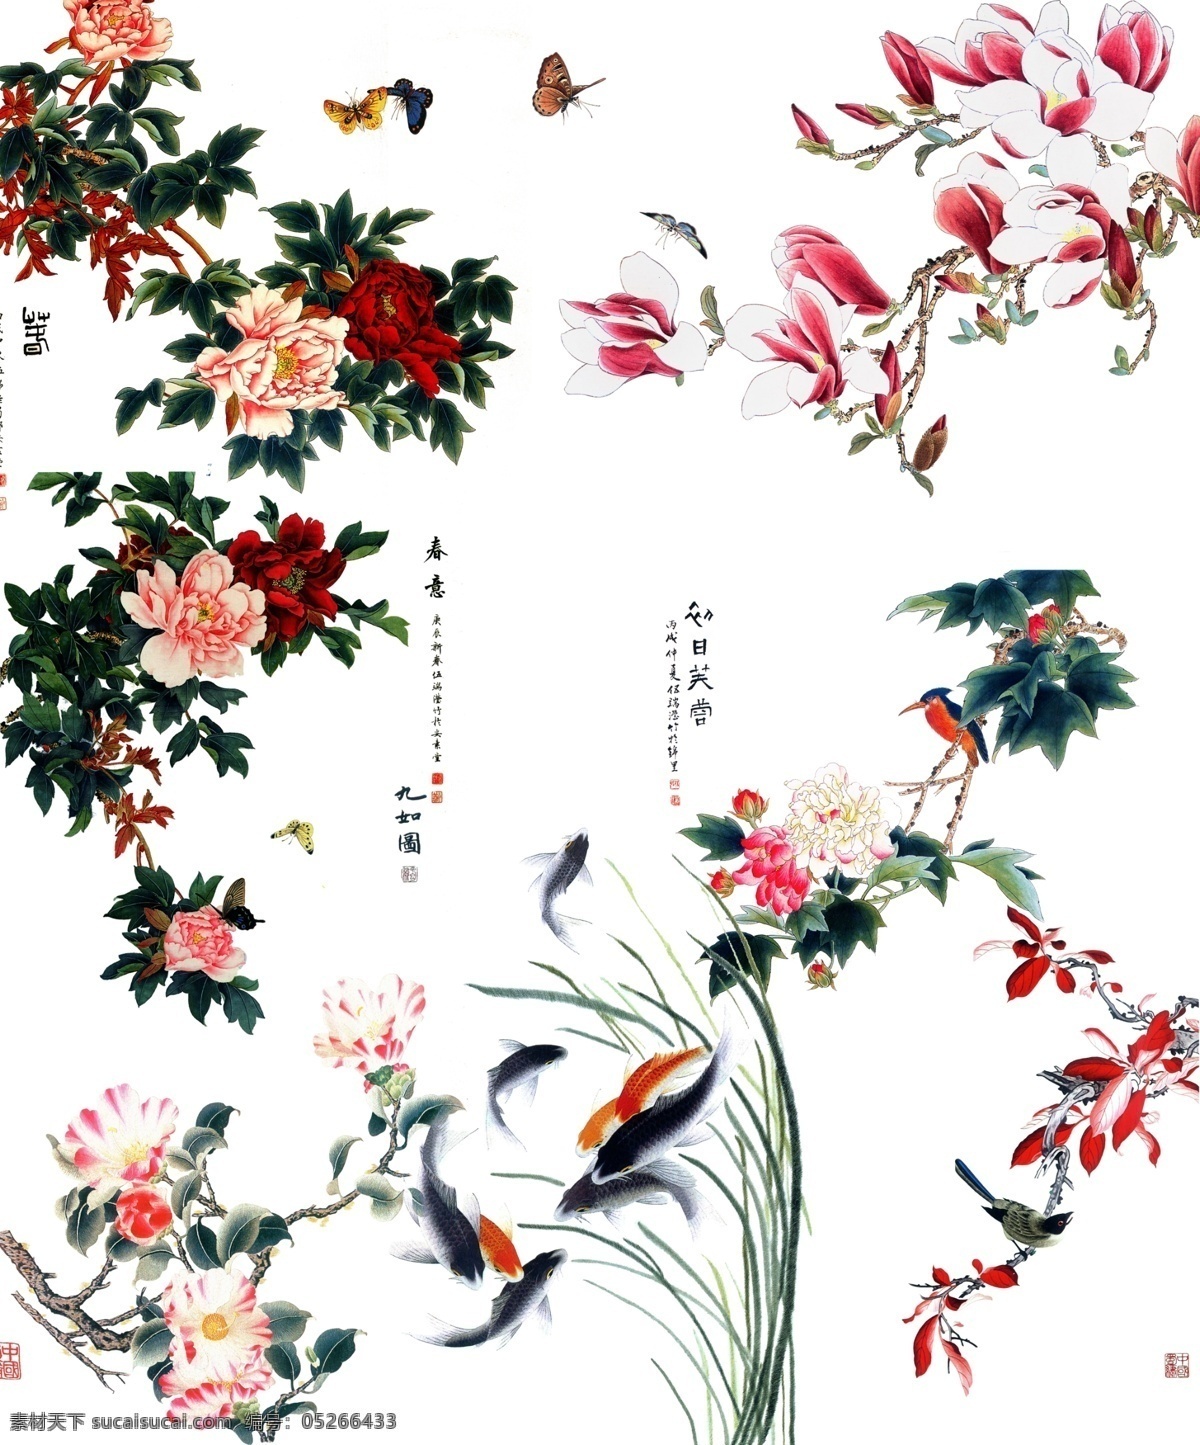 中国 风 工笔 花鸟 ps 中国风 古风 古典 工笔画 花朵 花卉 蝴蝶 牡丹花 花枝 春意 小鸟 包装设计